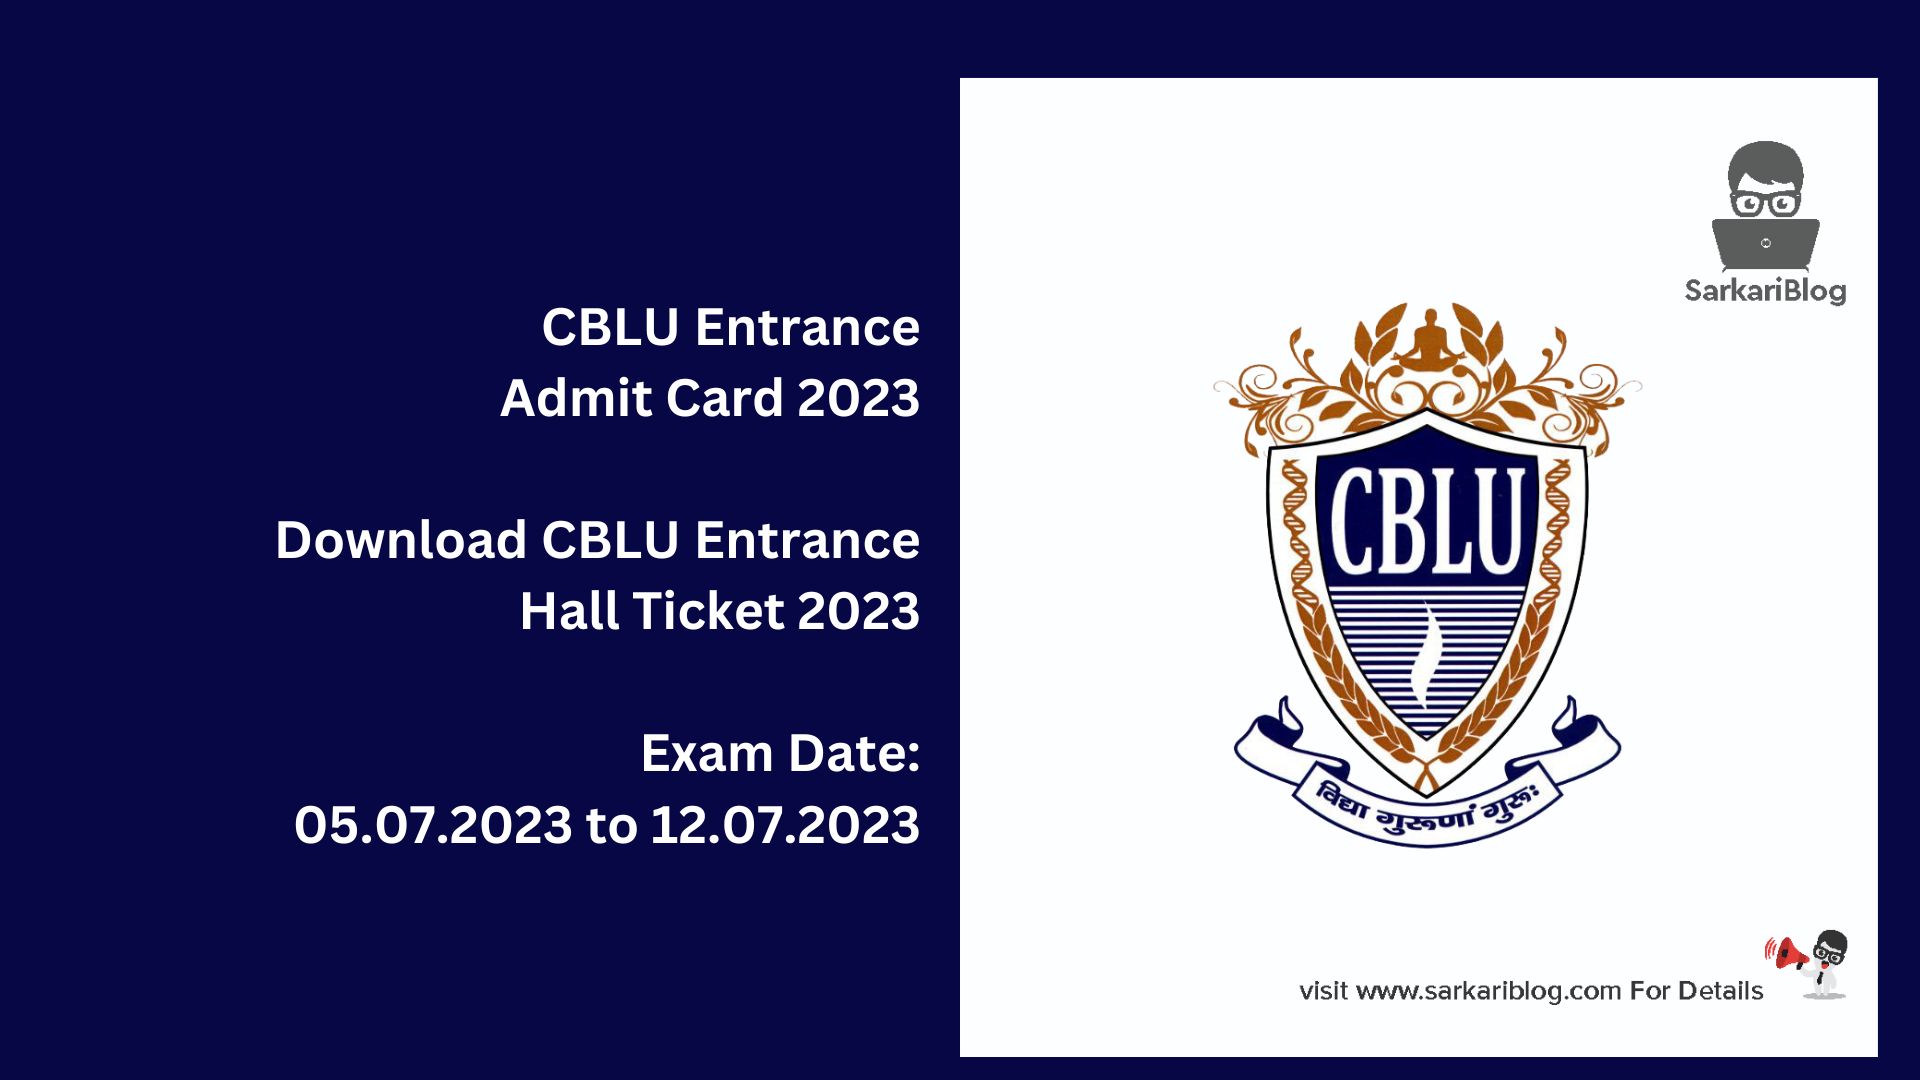 CBLU Entrance Admit Card 2023